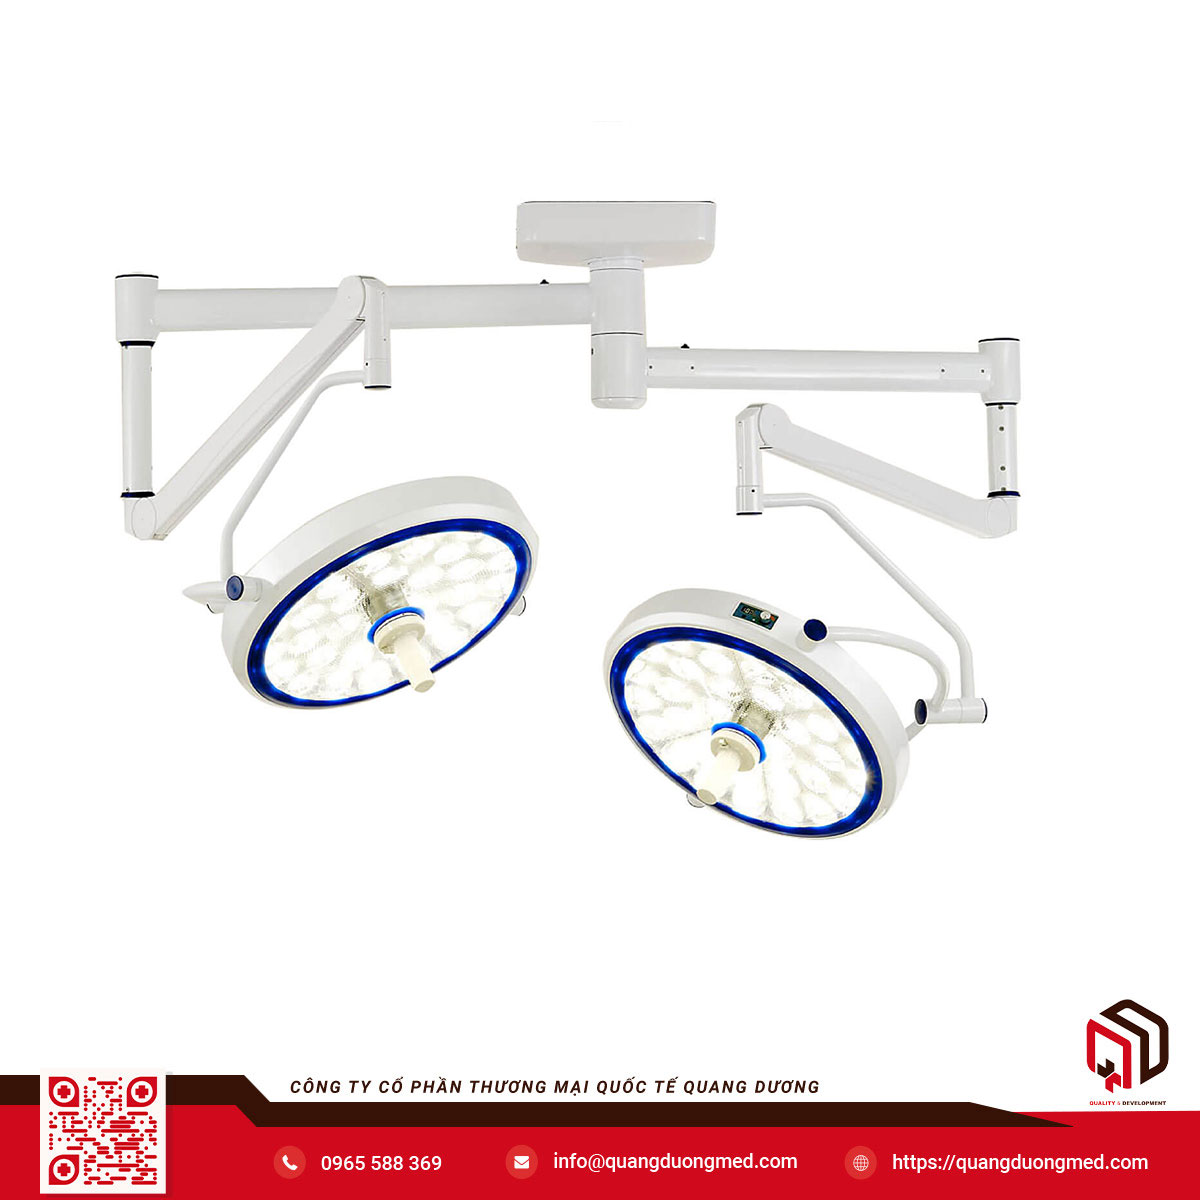 Đèn phẫu thuật treo trần 2 nhánh bóng đèn LED SLK-101C | Sturdy